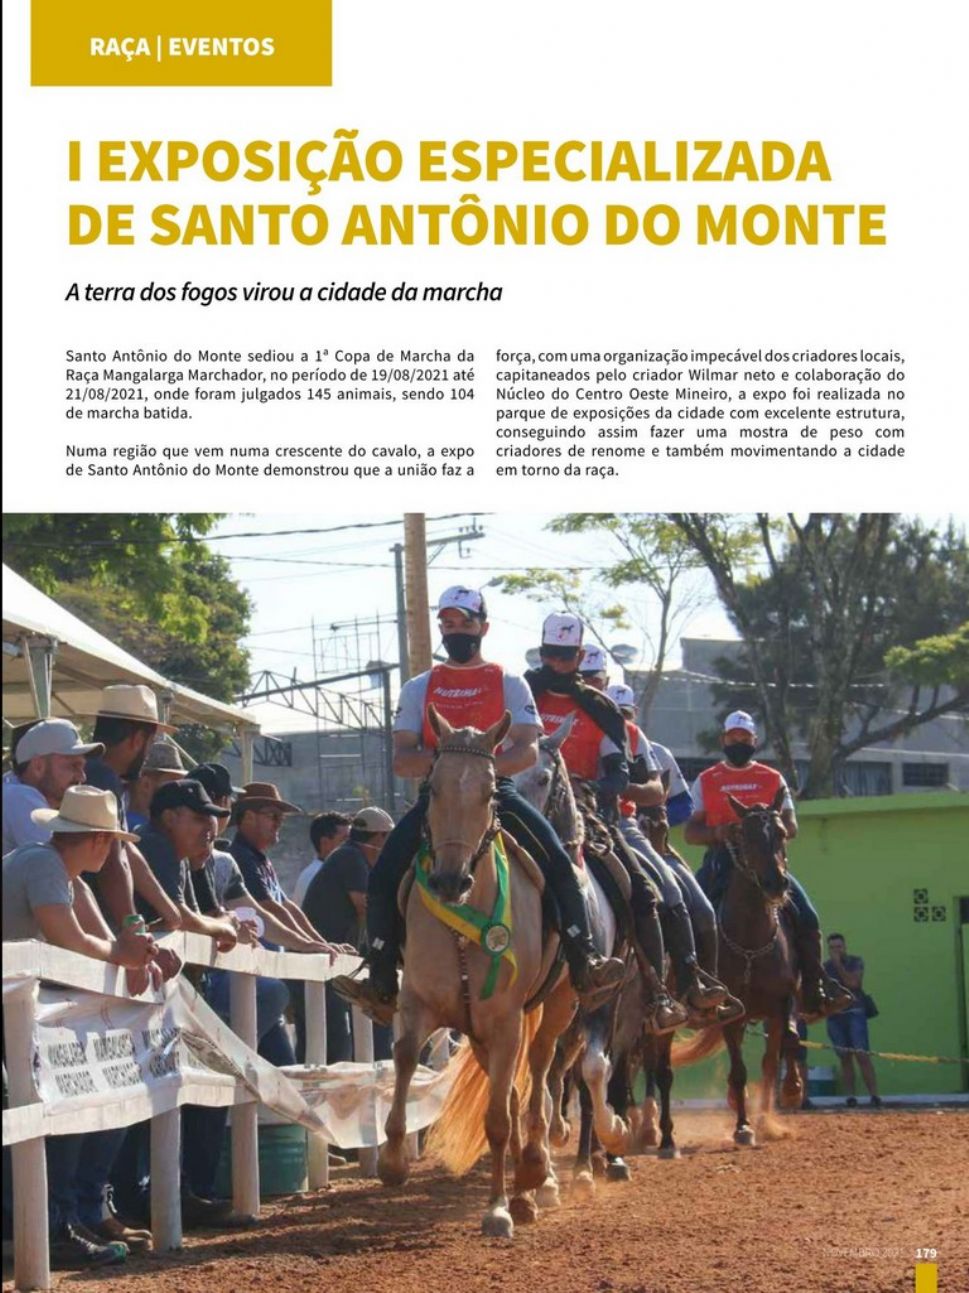 I EXPOSIÇÃO ESPECIALIZADA DE SANTO ANTÔNIO DO MONTE